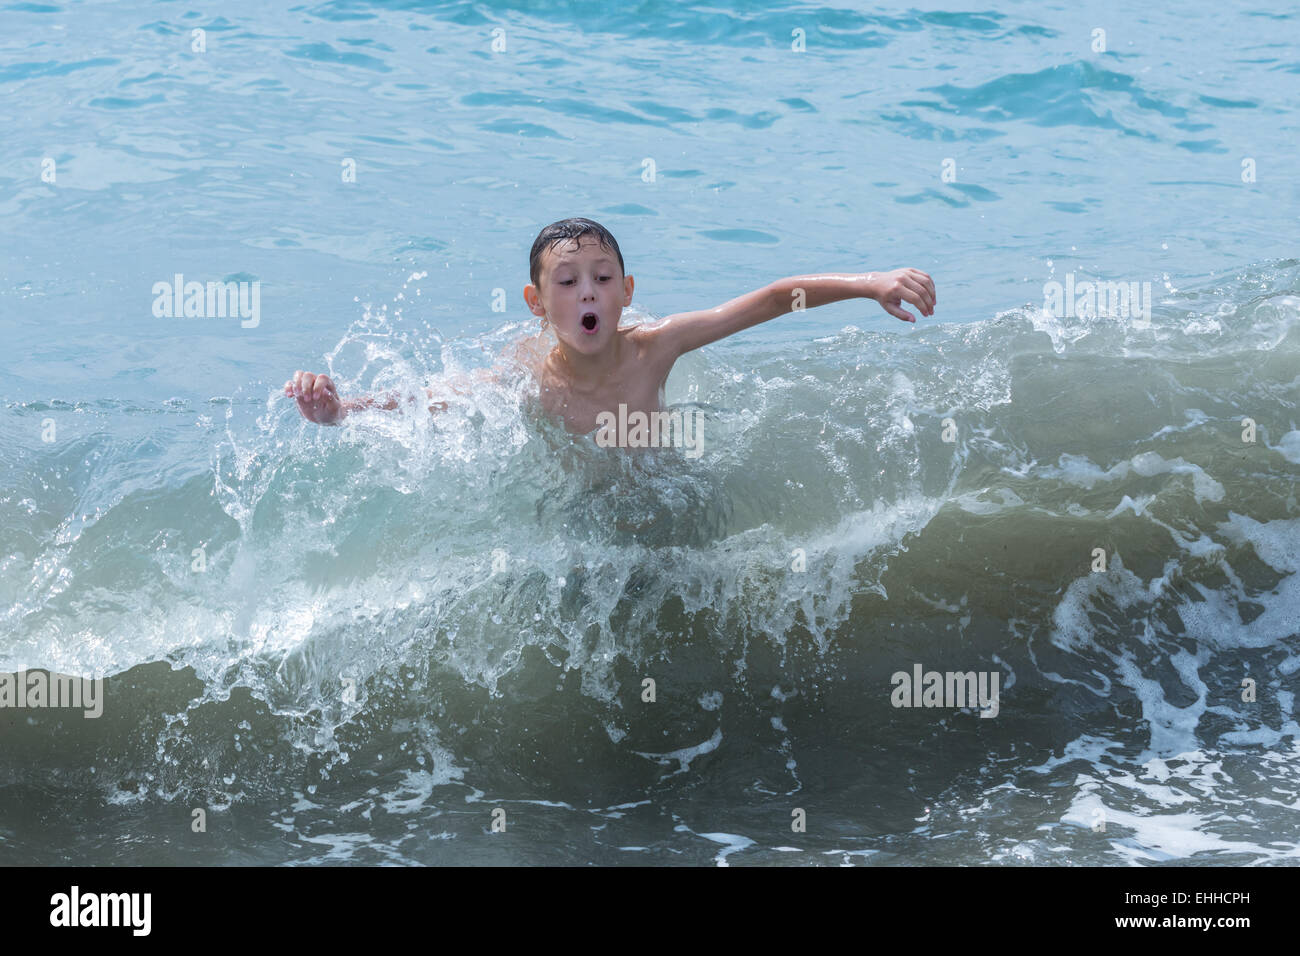 small boy swimming in sea Stock Photo